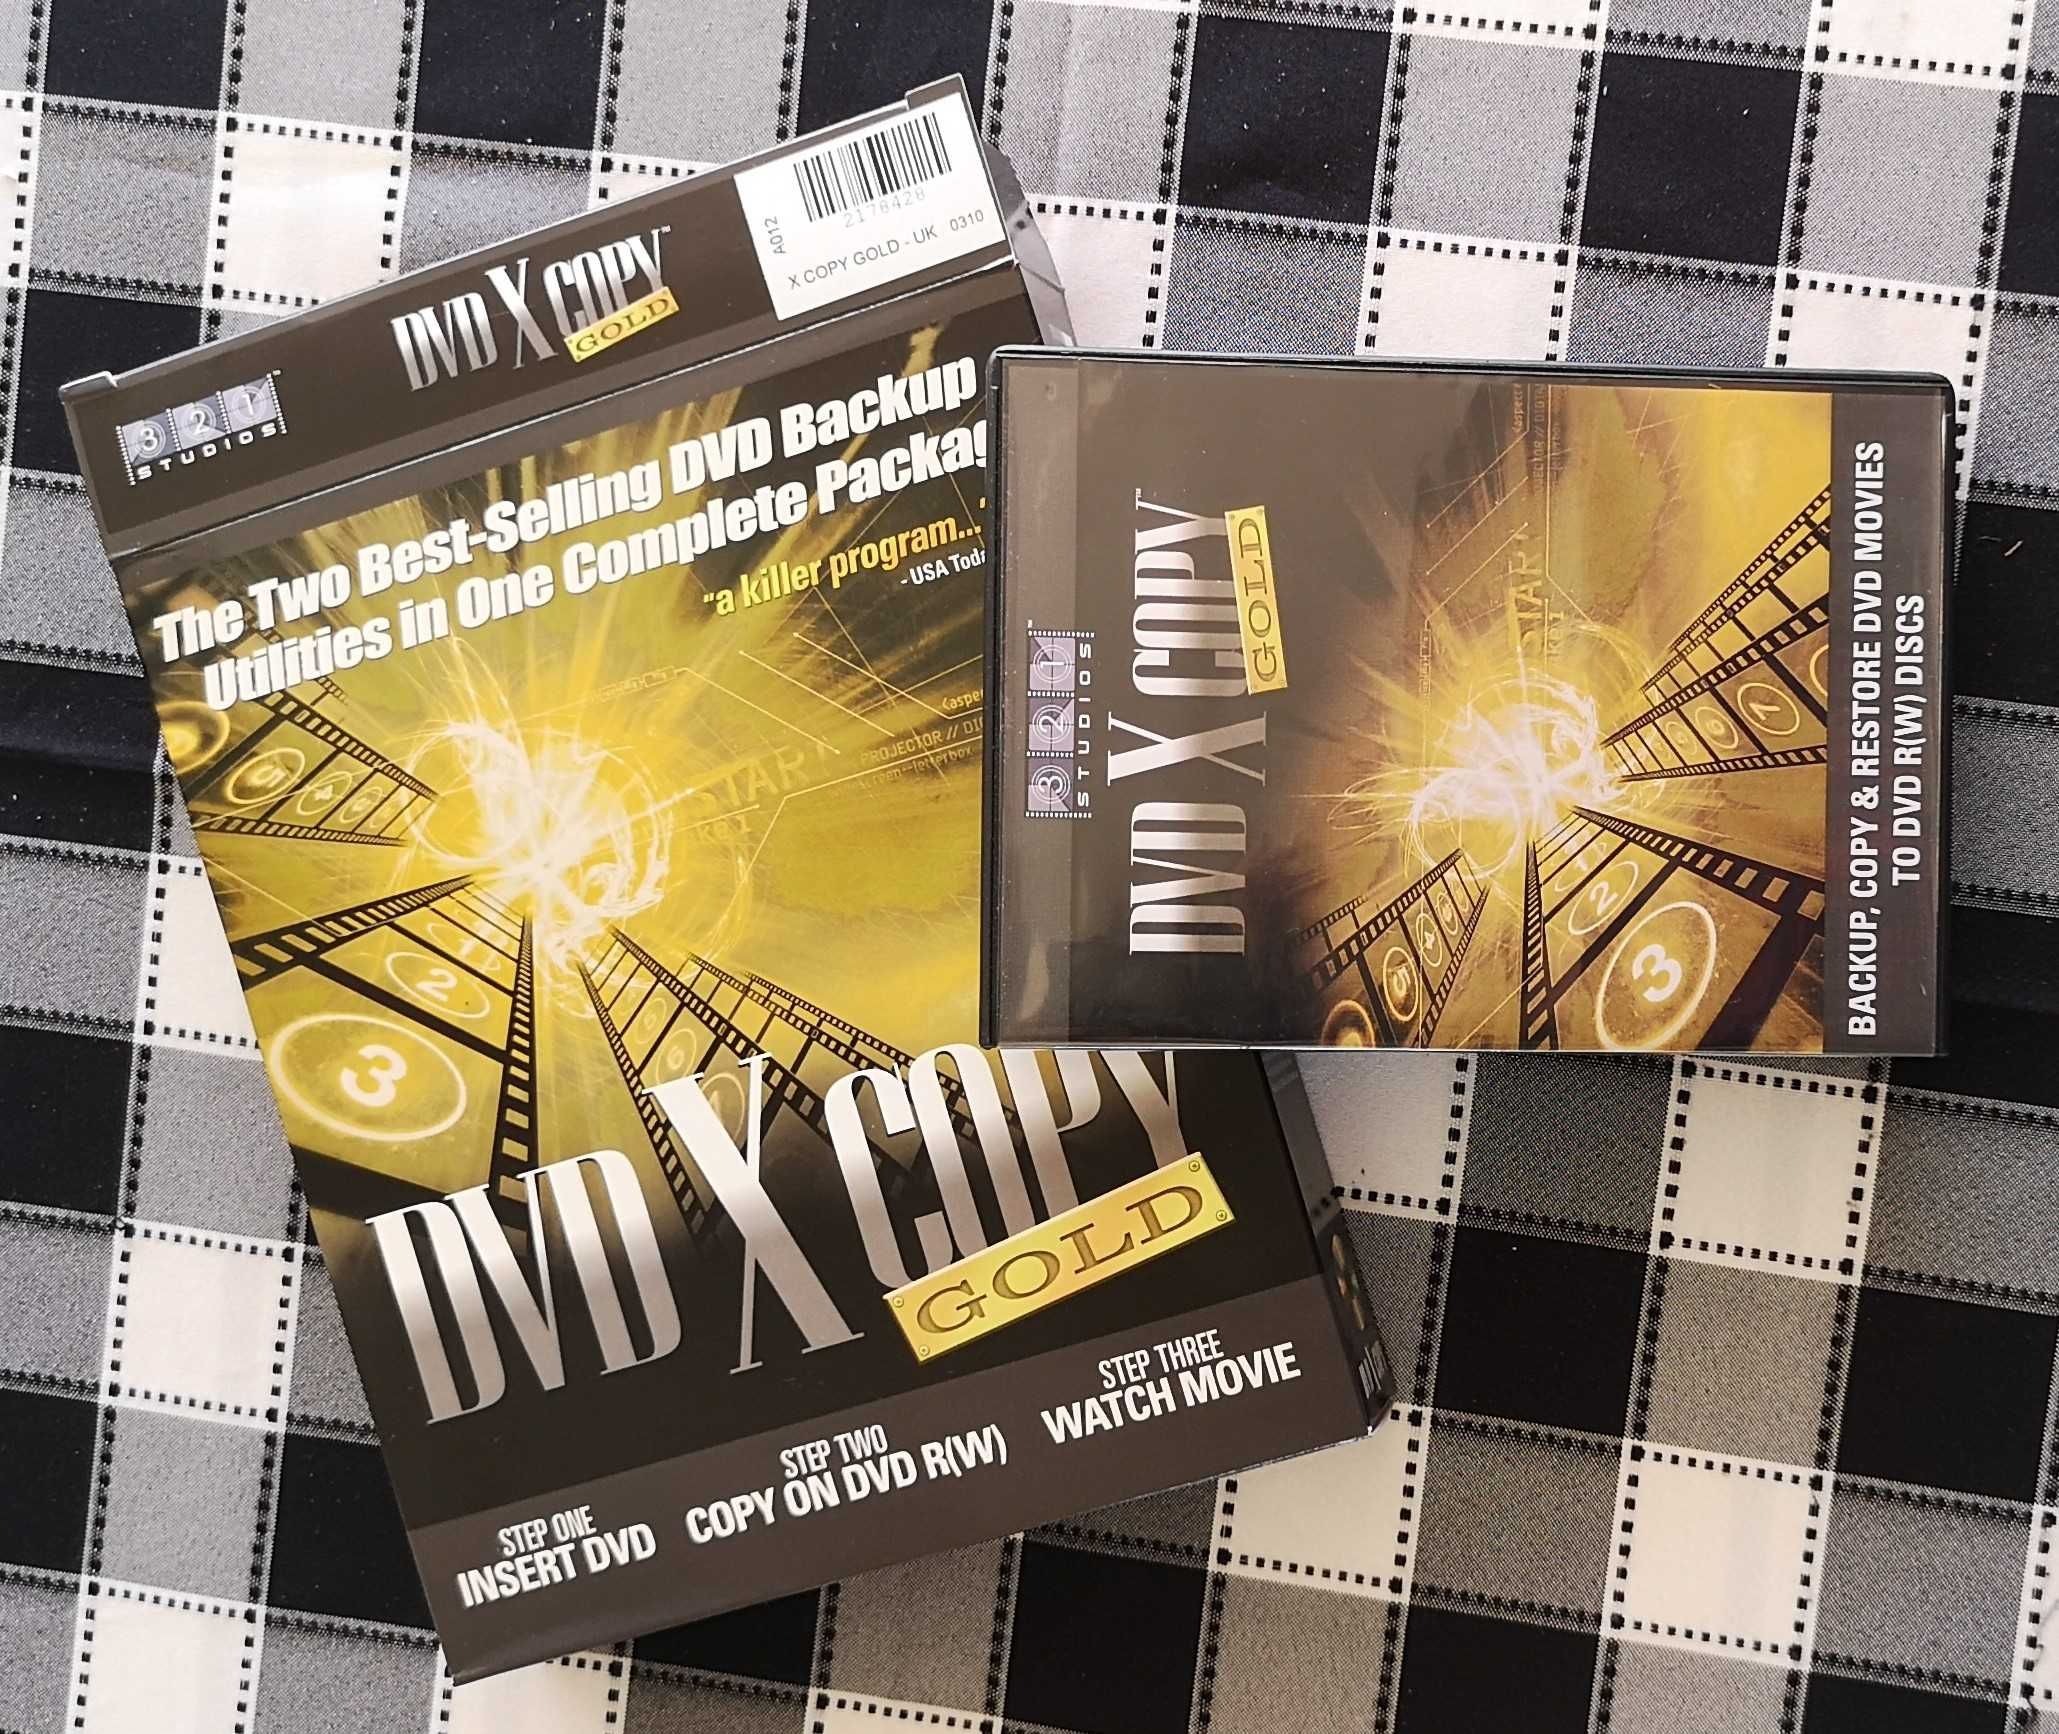 DVD X Copy Gold (Original)